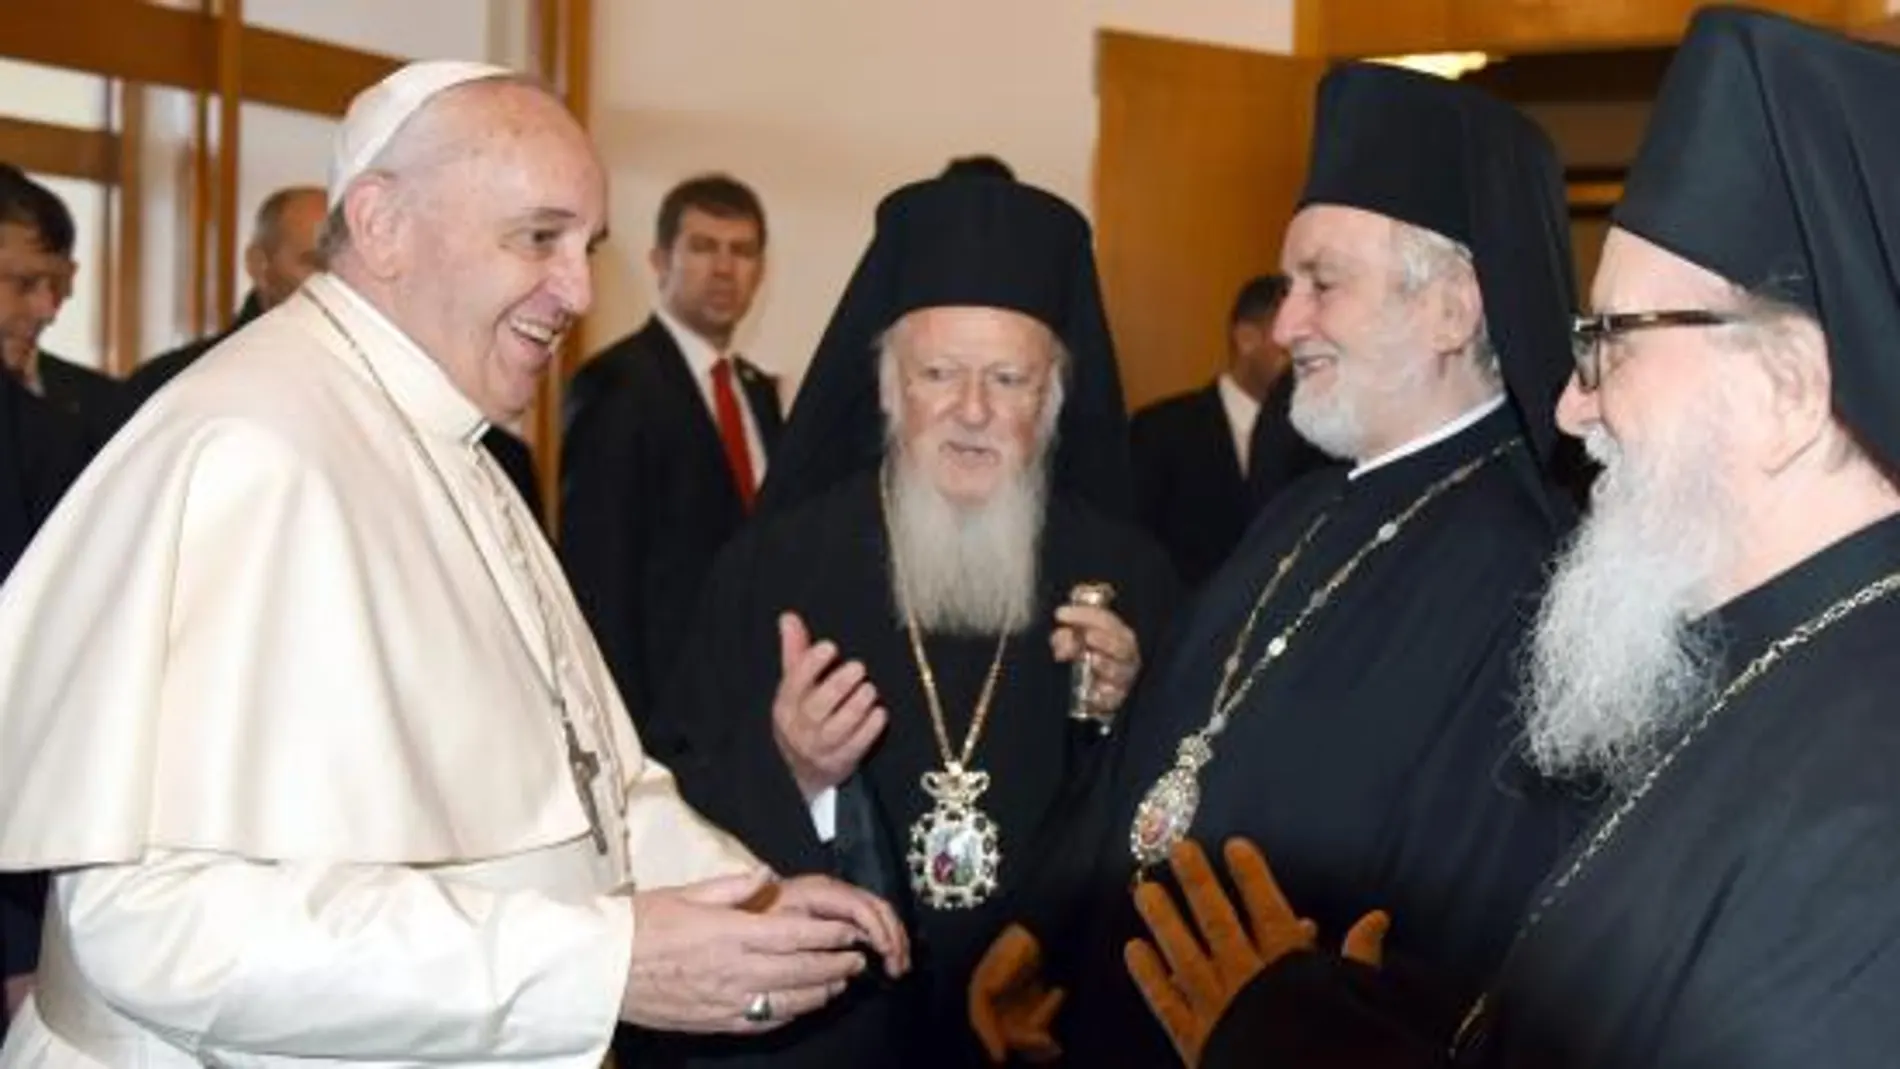 El Papa, junto al Patriarca de Constantinopla, Bartolomé I, el Metropolita Siro-Ortodoxo, Jean Kawak, el Vicario Patriarcal Armenio Apostólico y otros representantes de las comunidades protestantes.